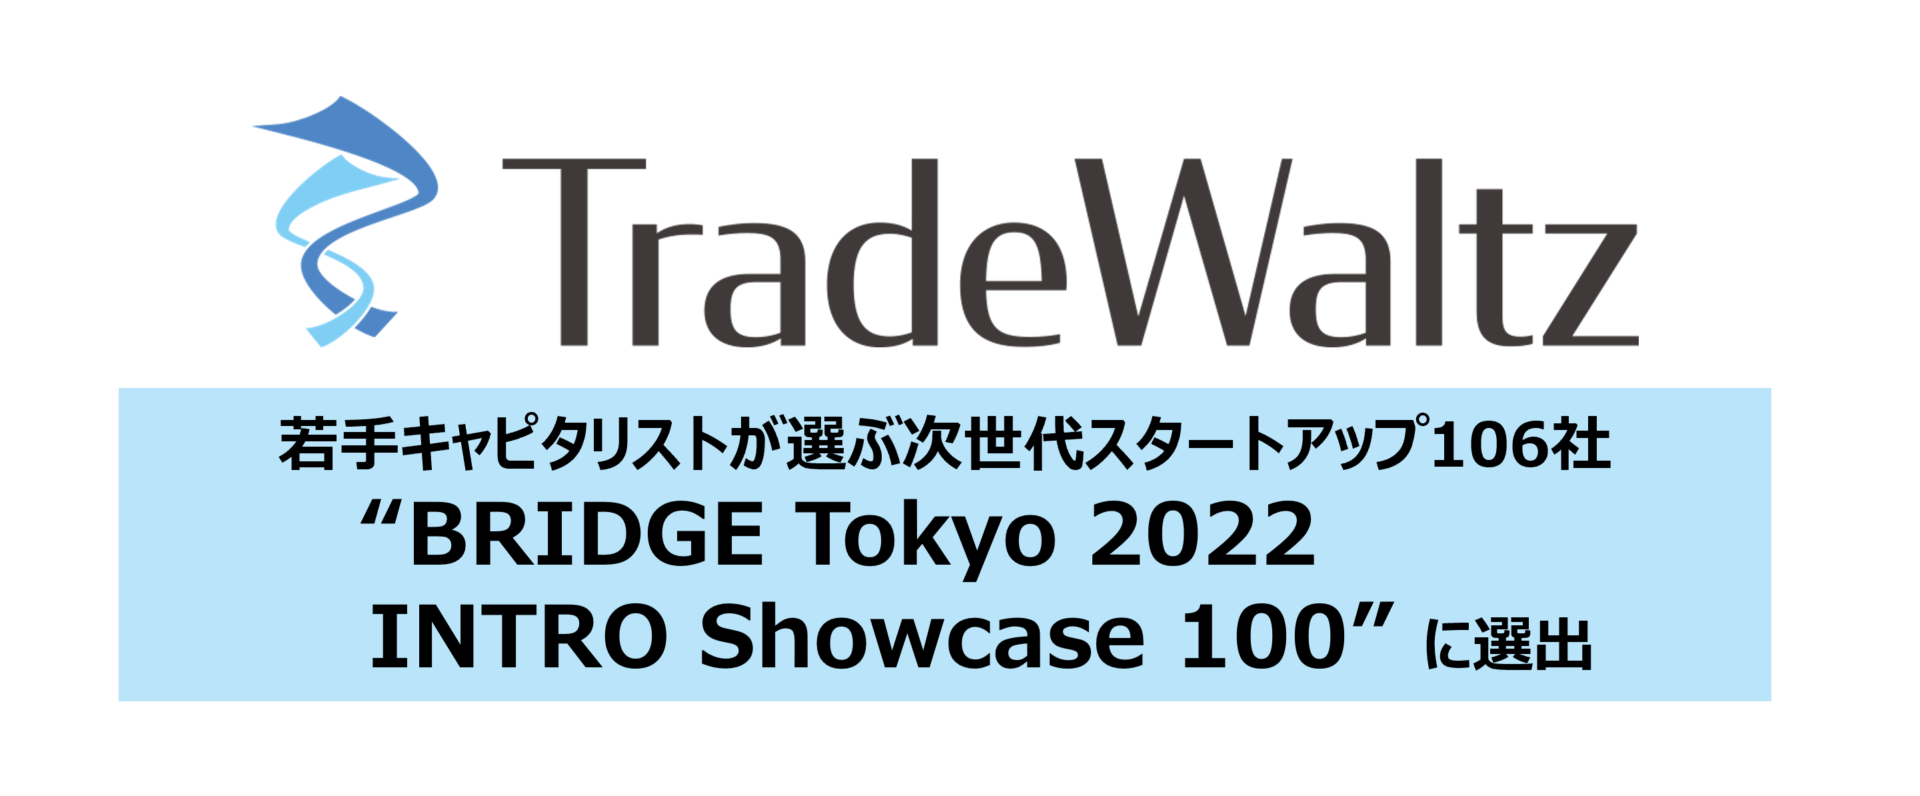 若手キャピタリストが選ぶ次世代スタートアップ “BRIDGE Tokyo 2022 INTRO Showcase100” にトレードワルツが選出されました。